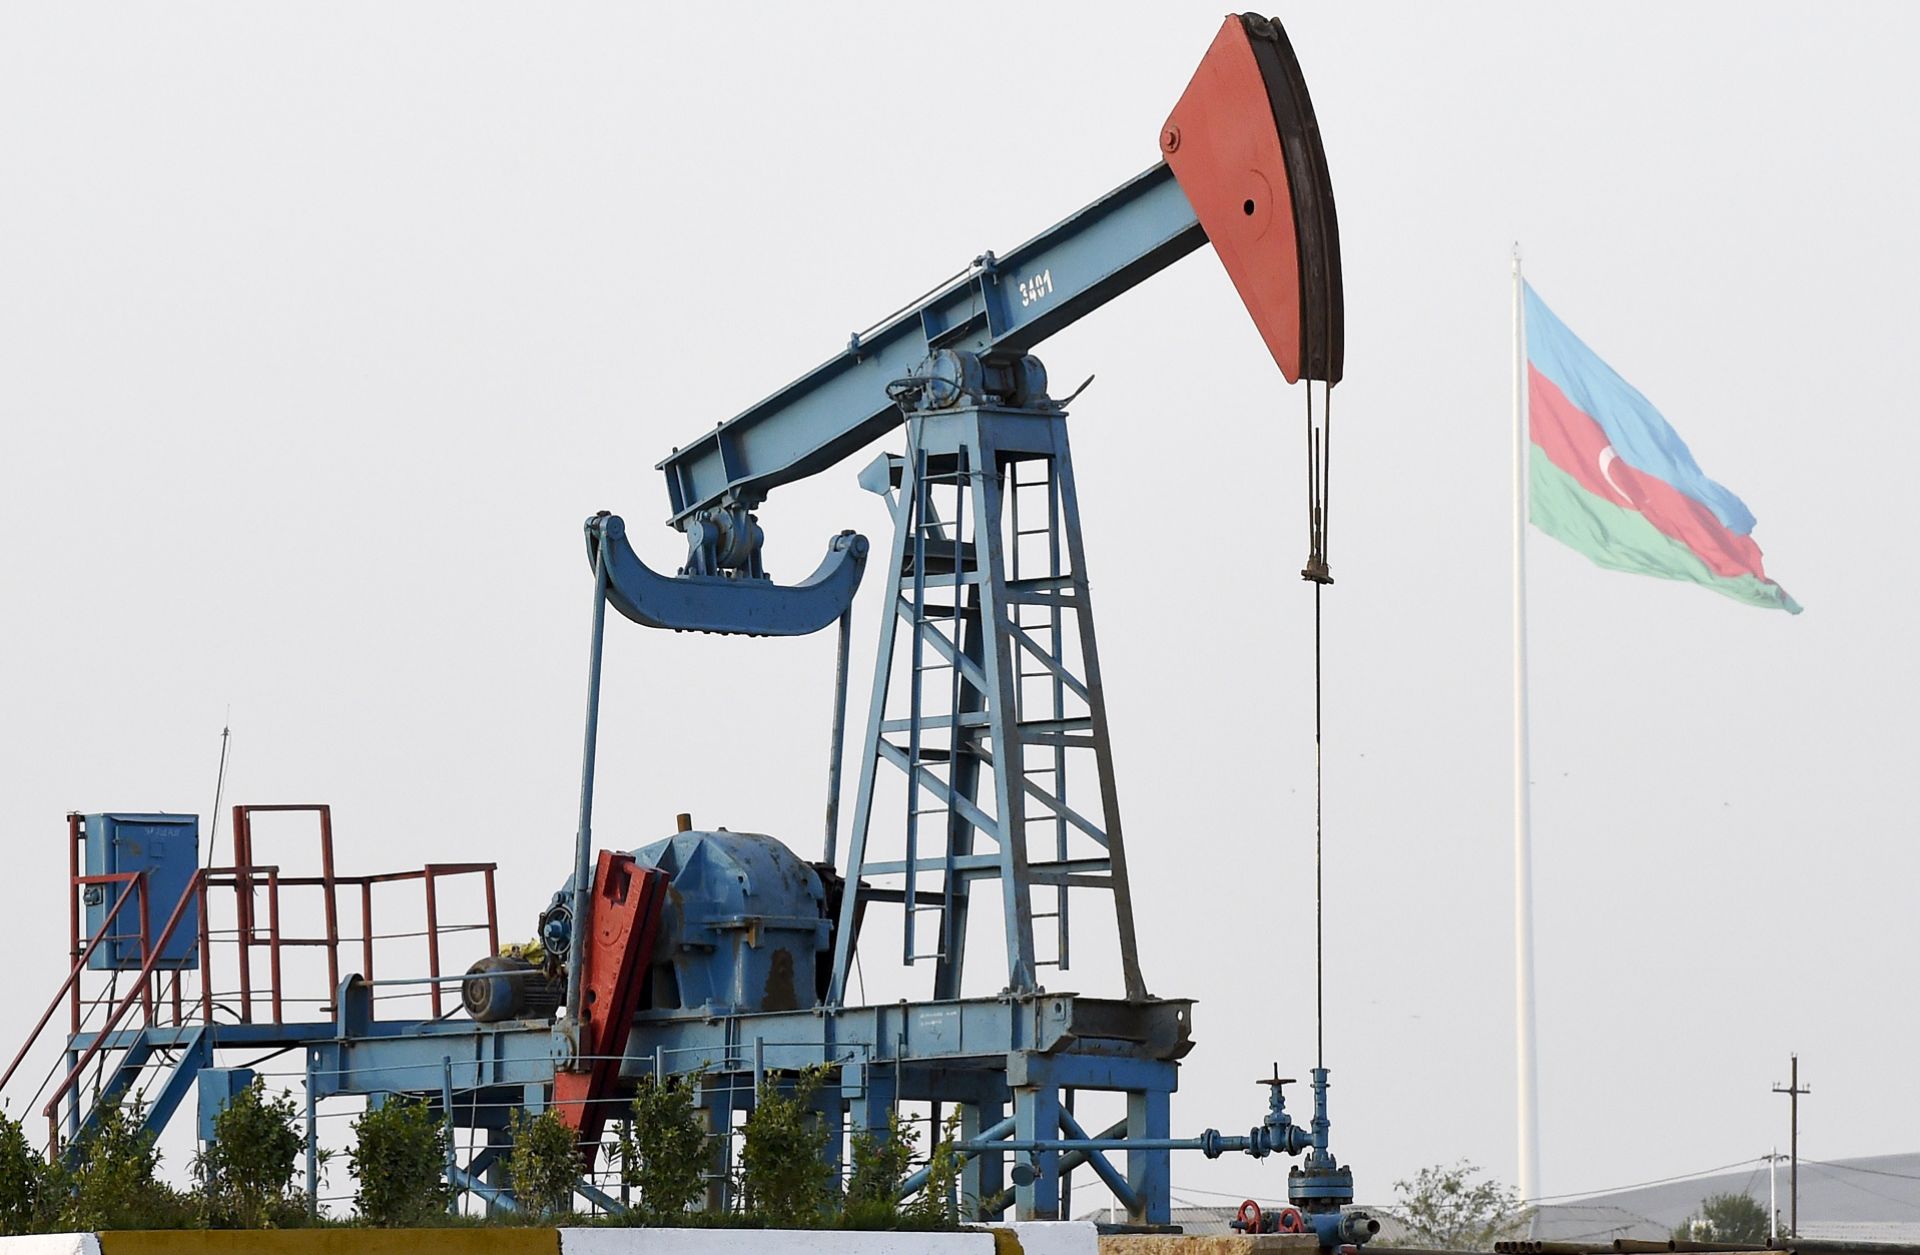 Azərbaycan nefti 5 %-dək ucuzlaşdı